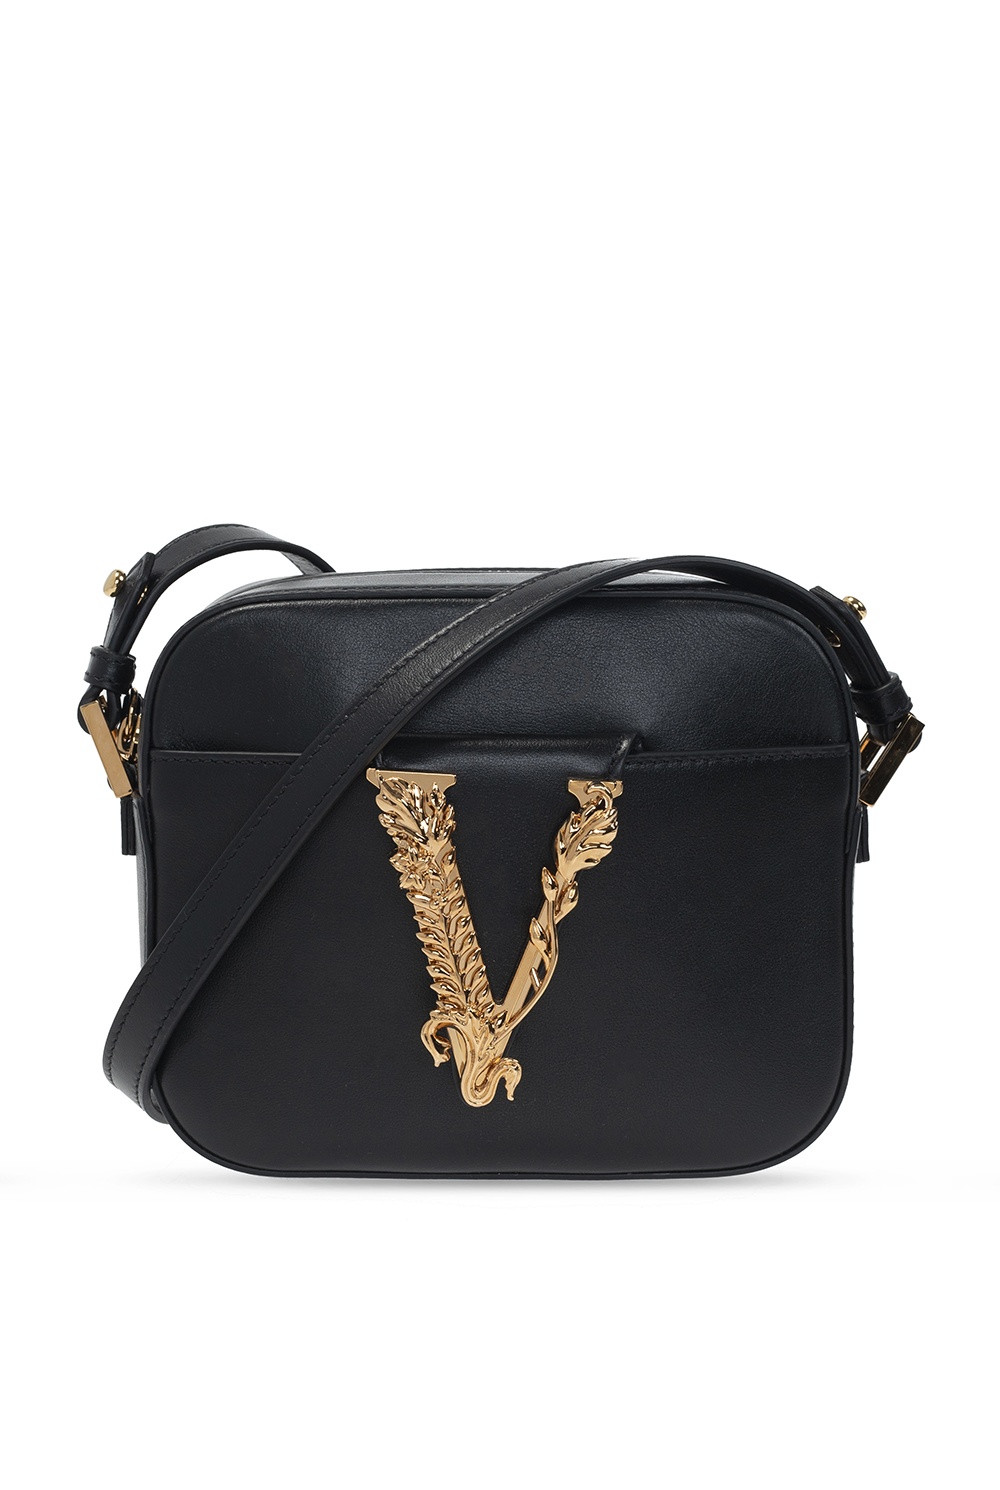 Versace 'Virtus' shoulder bag, Women's Bags